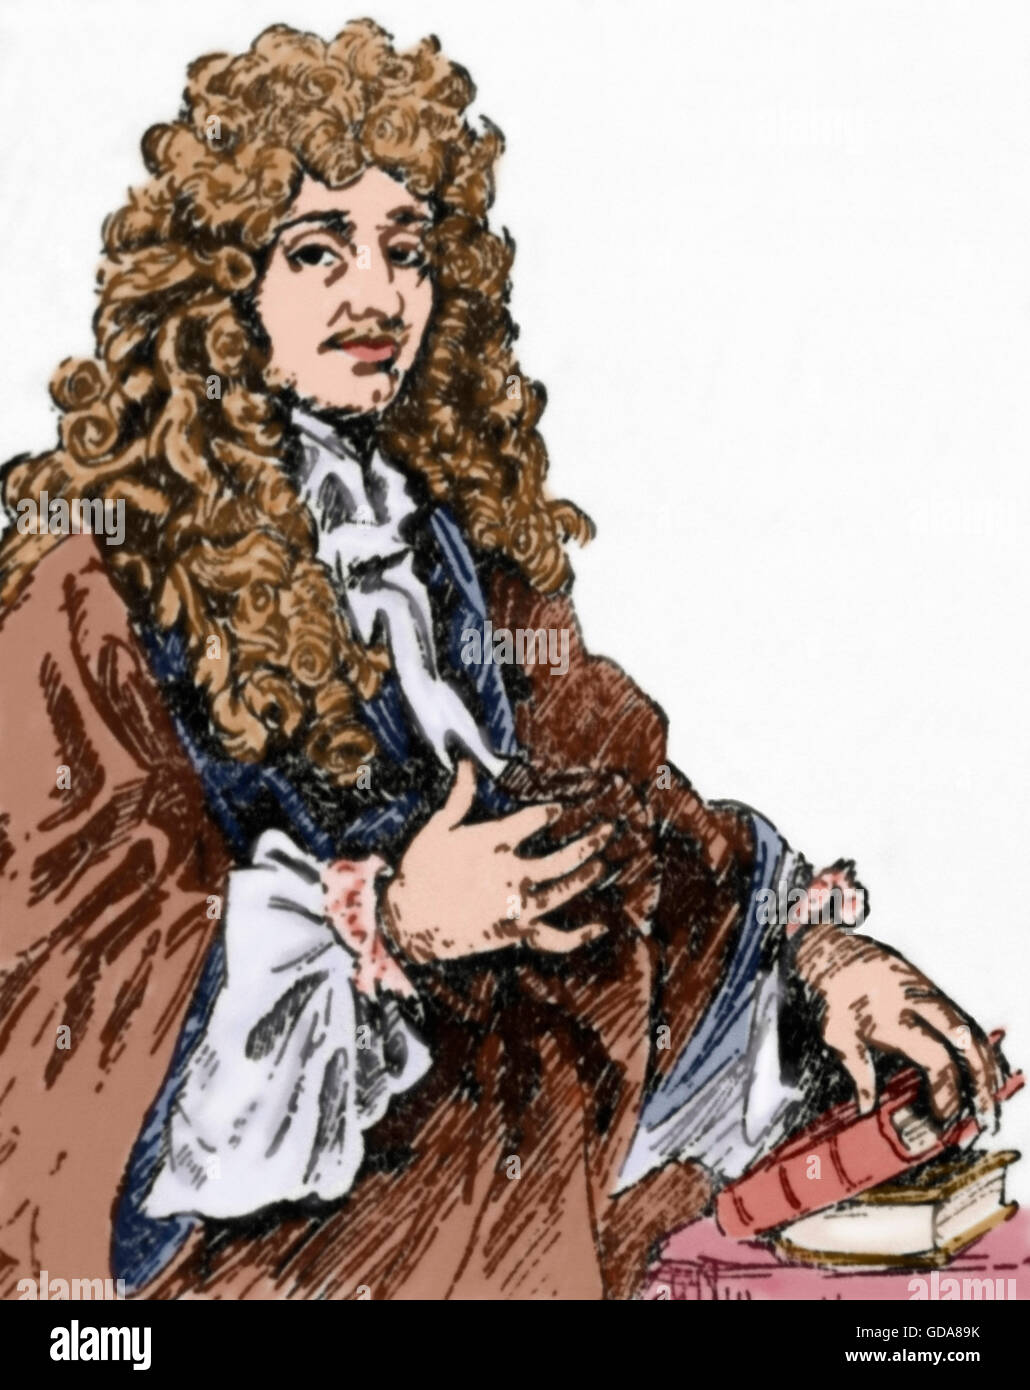 Christiaan Huygens (1629-1695). Dutch matematico e scienziato. Egli è conosciuto soprattutto come un astronomo, fisico e probabilist horologist. Ritratto. Incisione. Colorati. Foto Stock